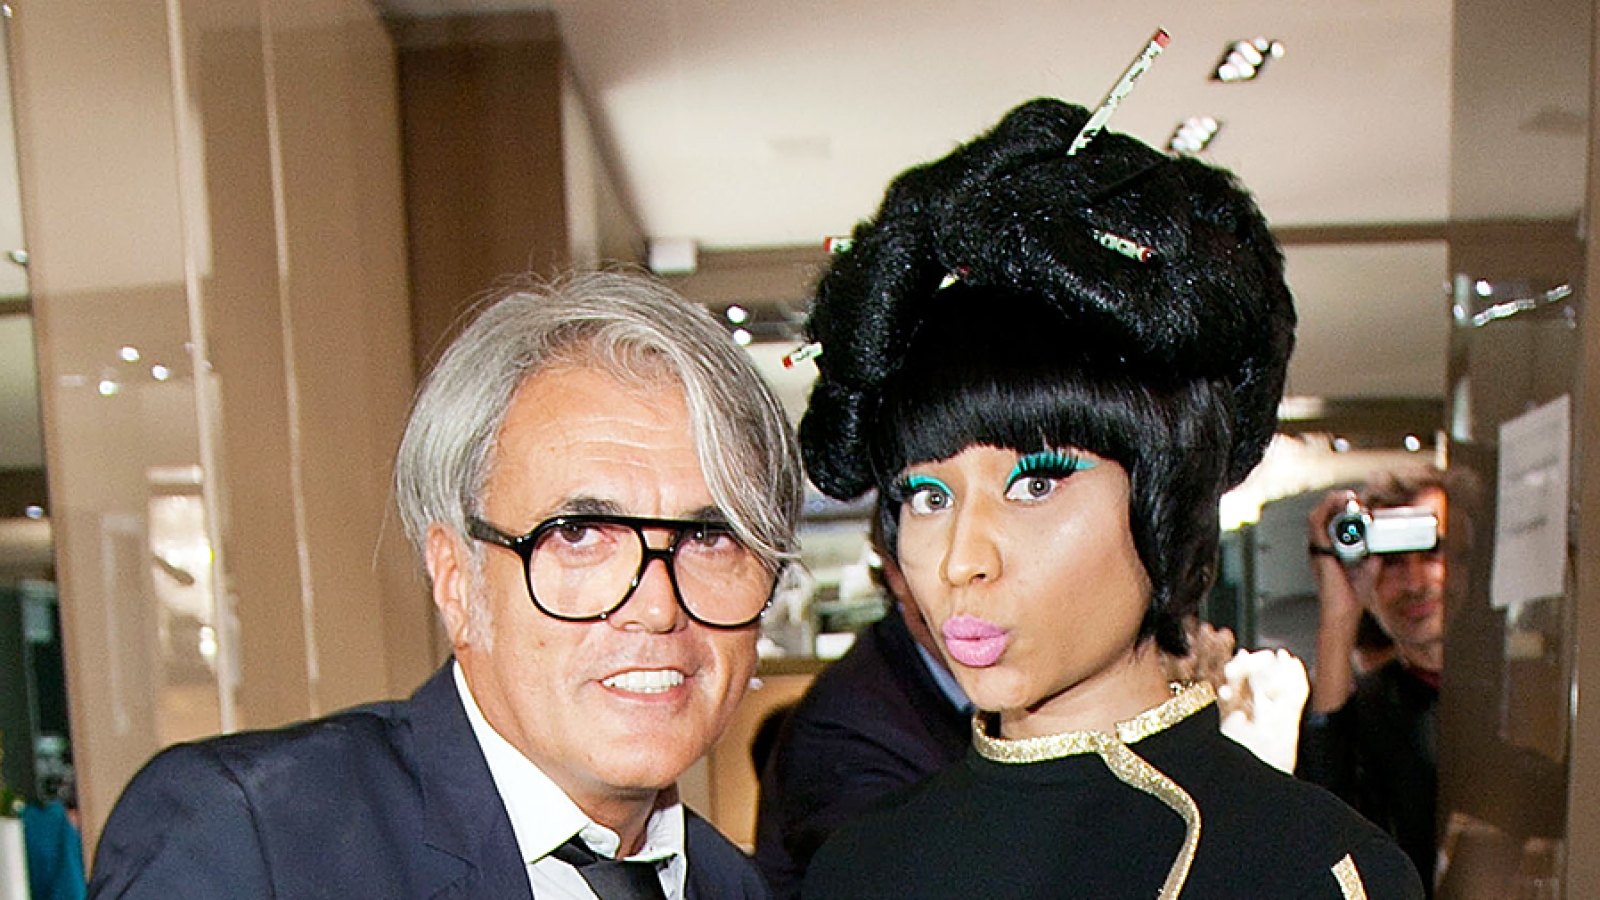 Nicki Minaj In Twitter Spat With Shoe Designer Giuseppe Zanotti